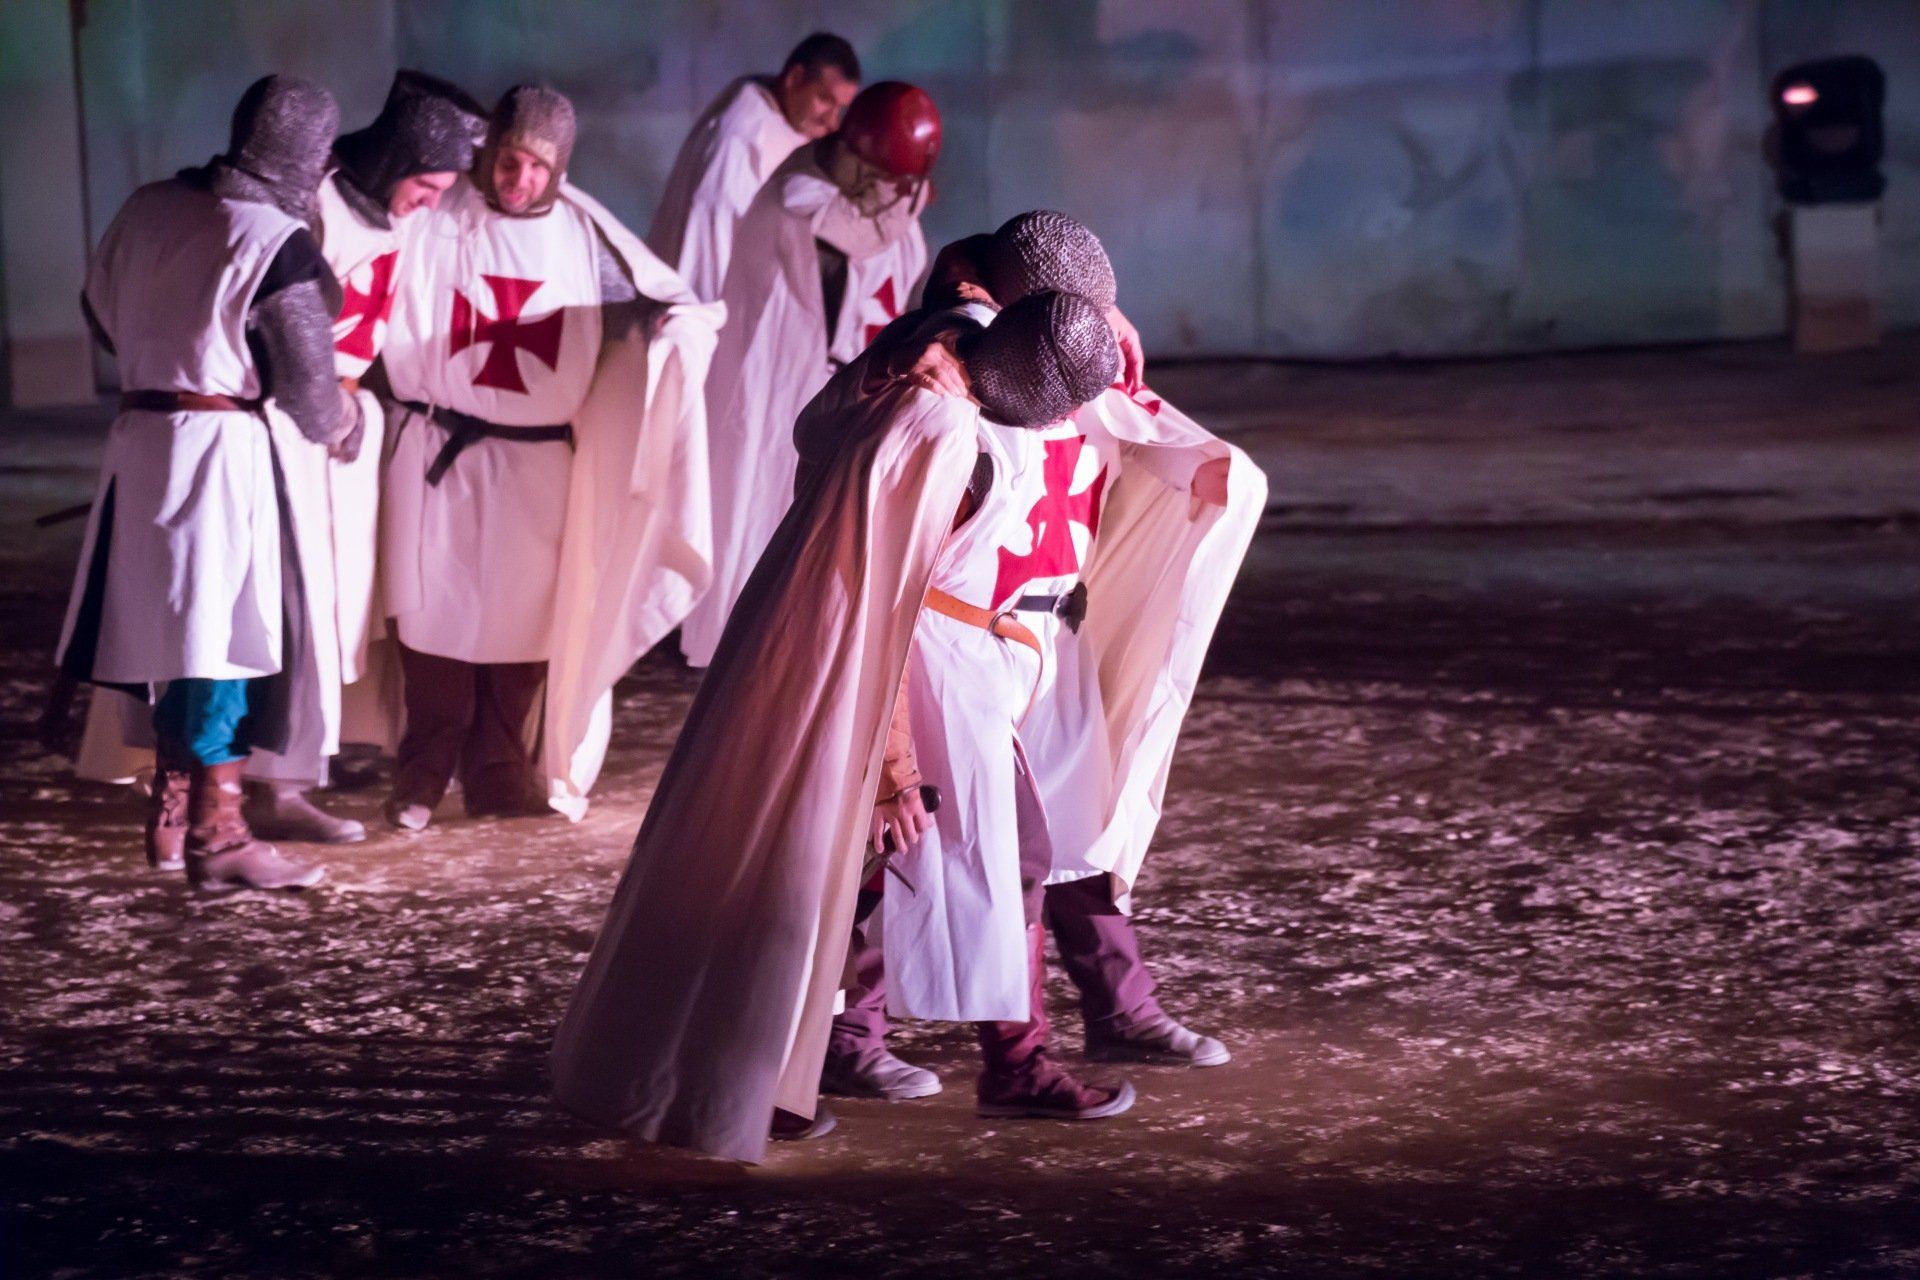 Les Nuits de Nemaus, Spectacle historique nocturne dans les Arènes de Nîmes, décors et costume par la Compagnie CPPP